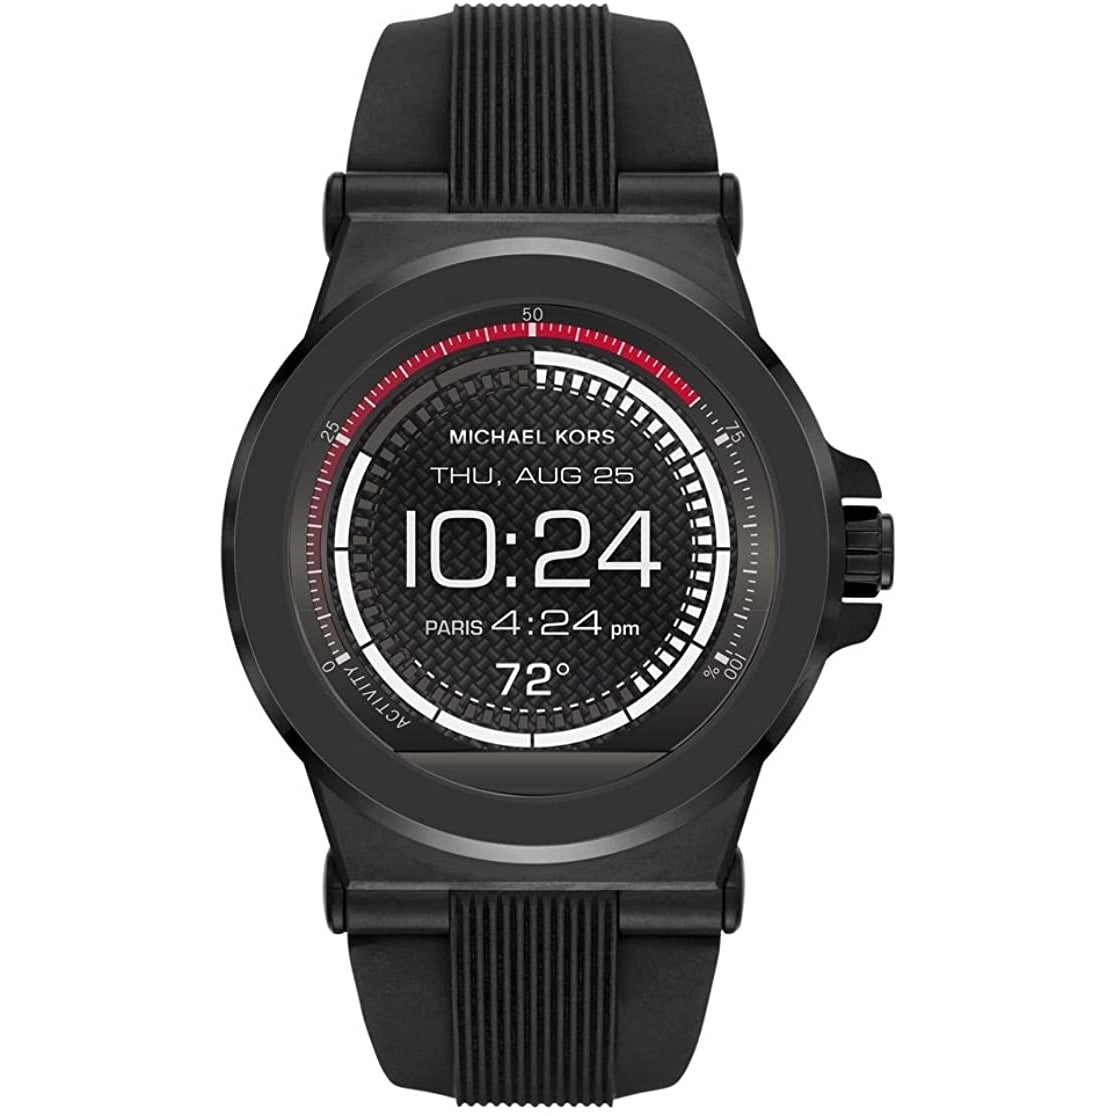 Michael Kors Men's Smartwatch - MKT5011 - Black